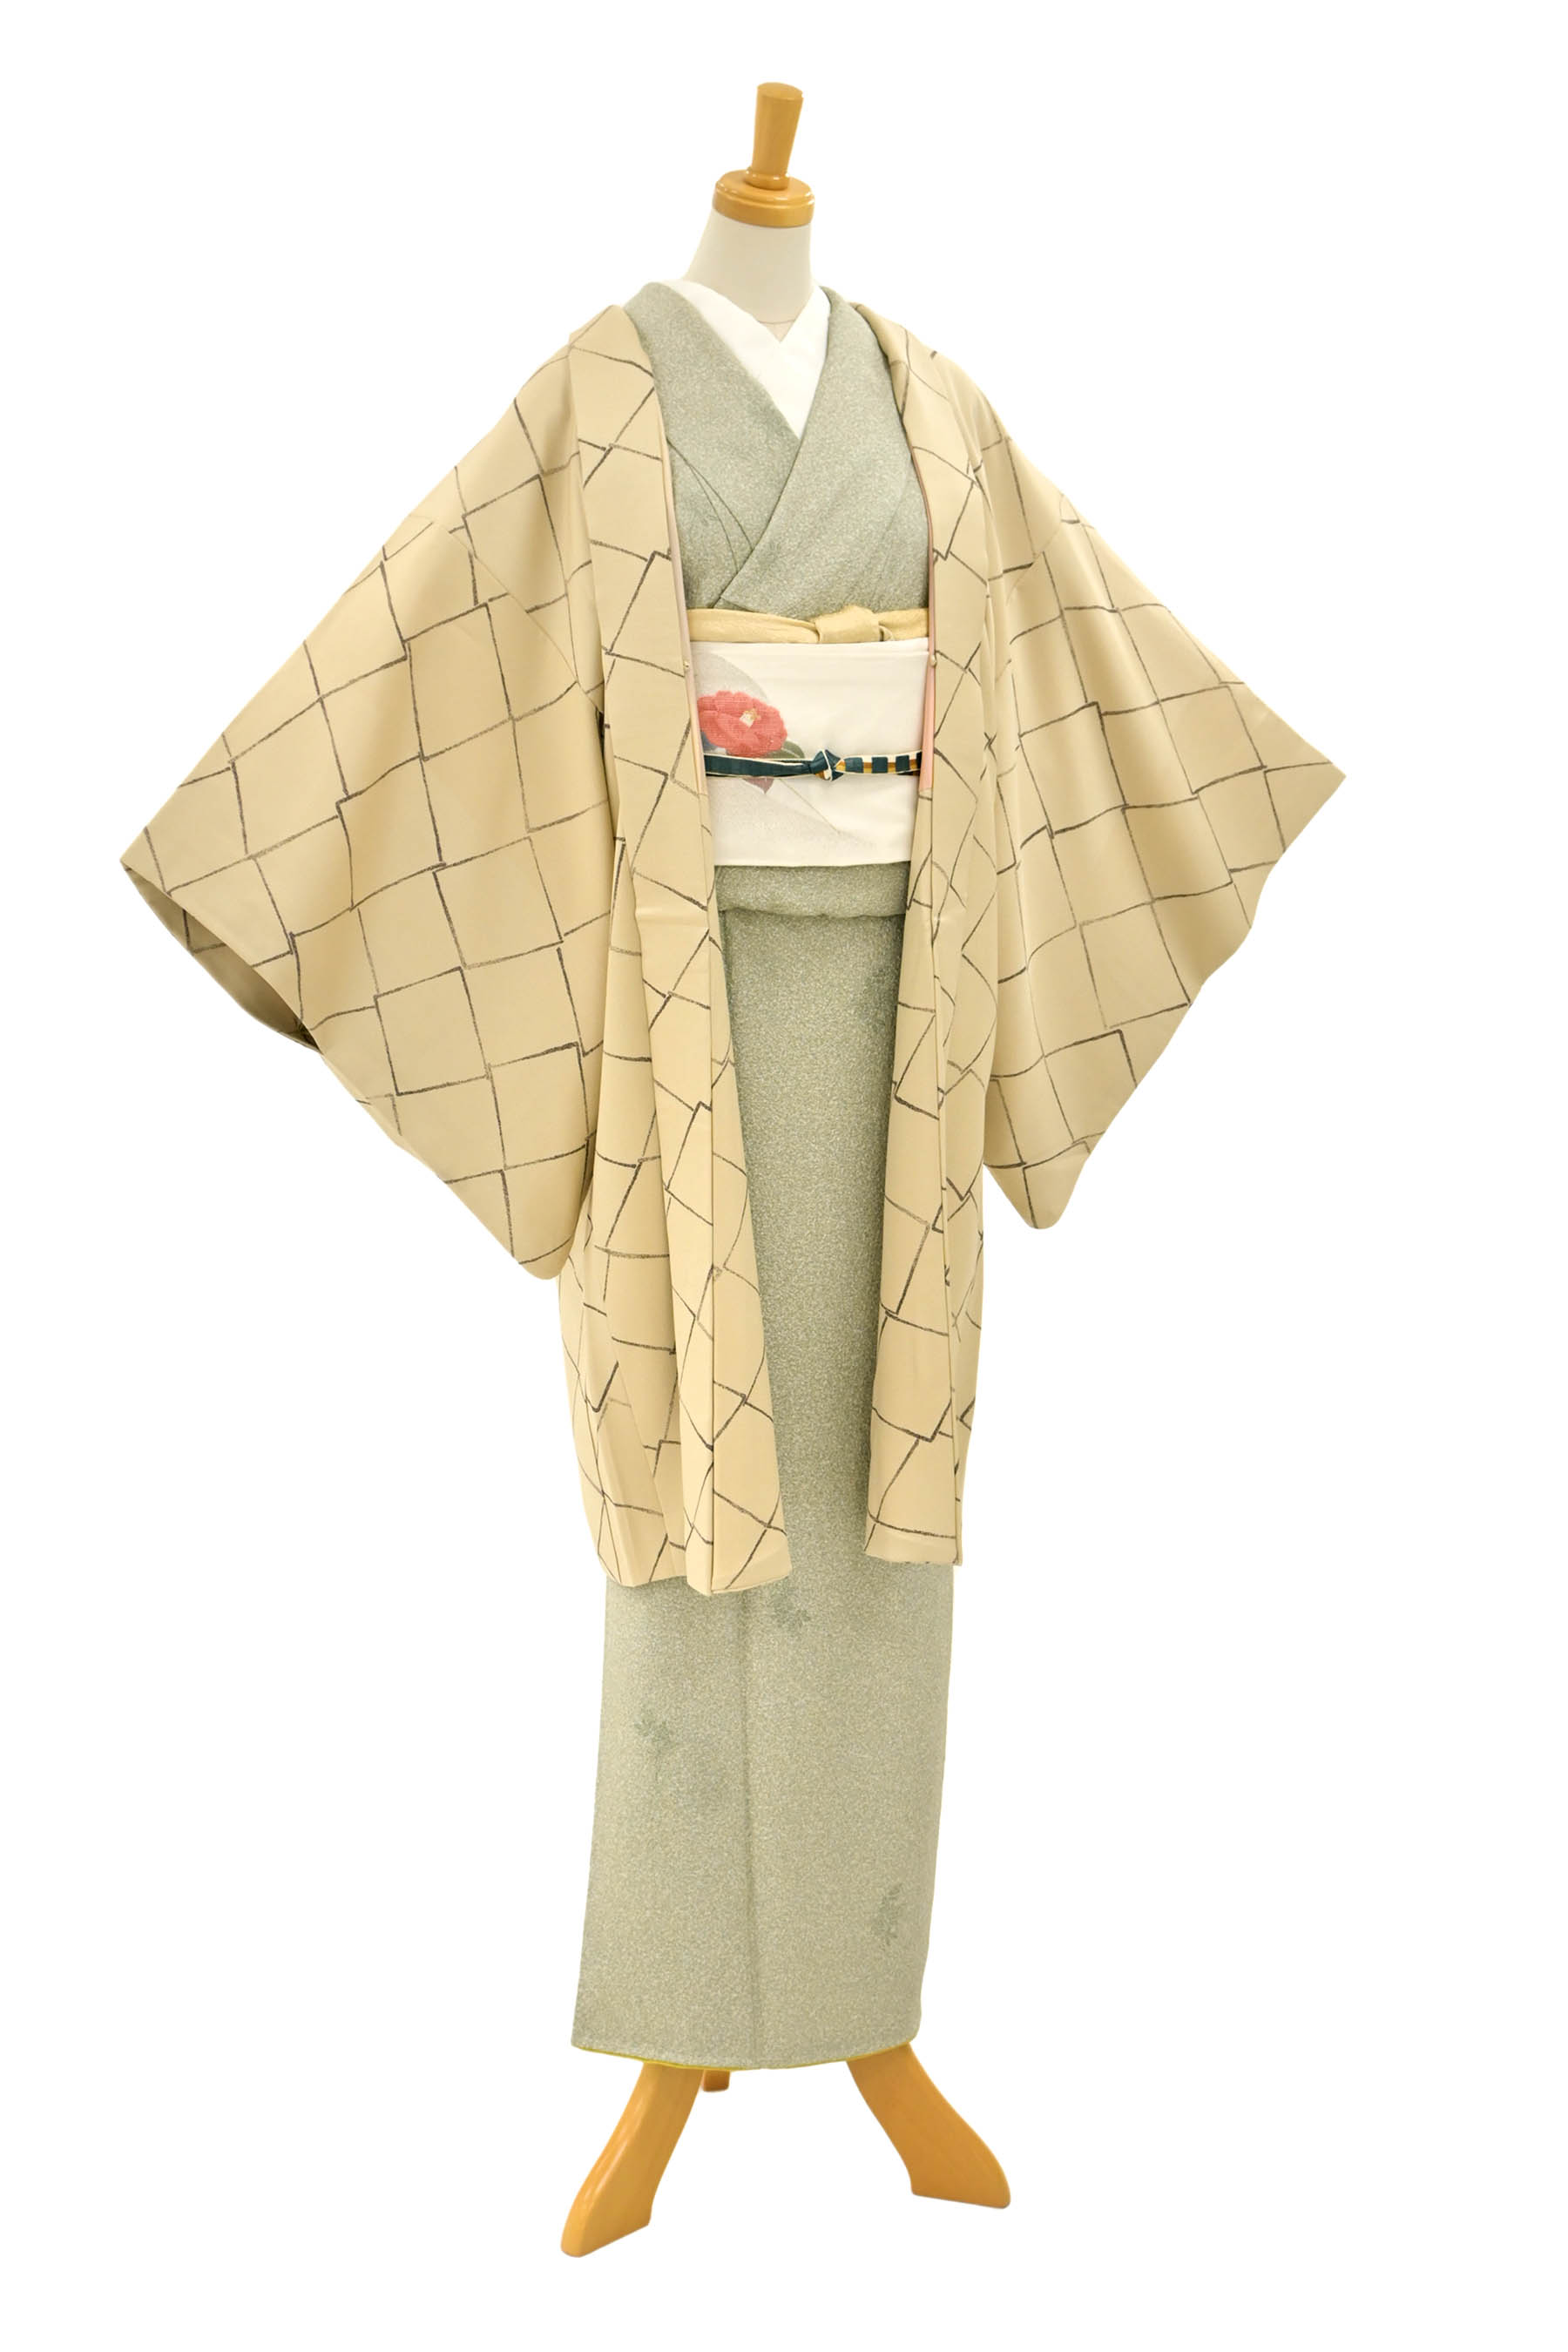 藤娘きぬたやの着物・帯の一覧|京都きもの市場【日本最大級の着物通販